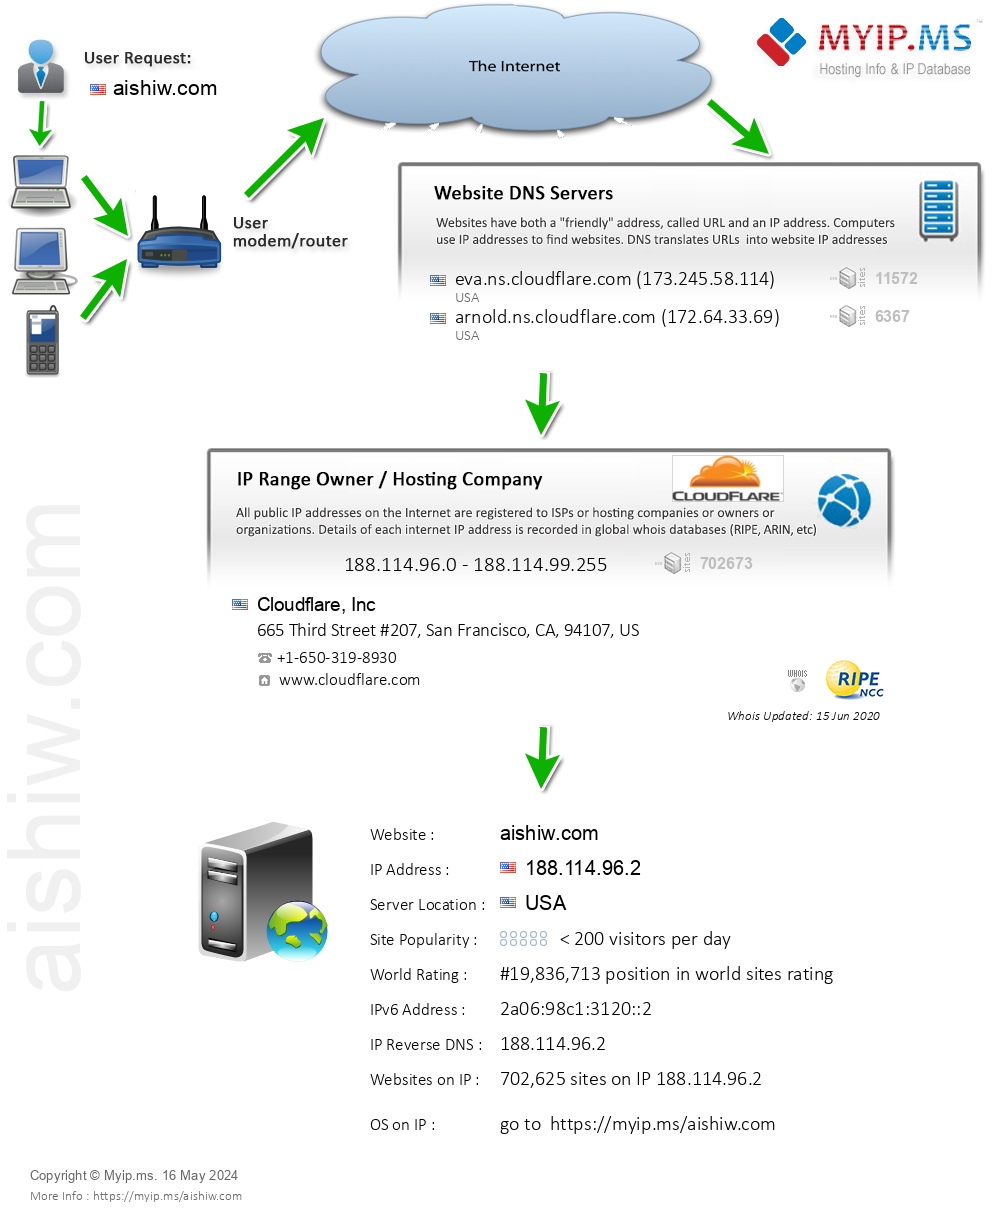 Aishiw.com - Website Hosting Visual IP Diagram